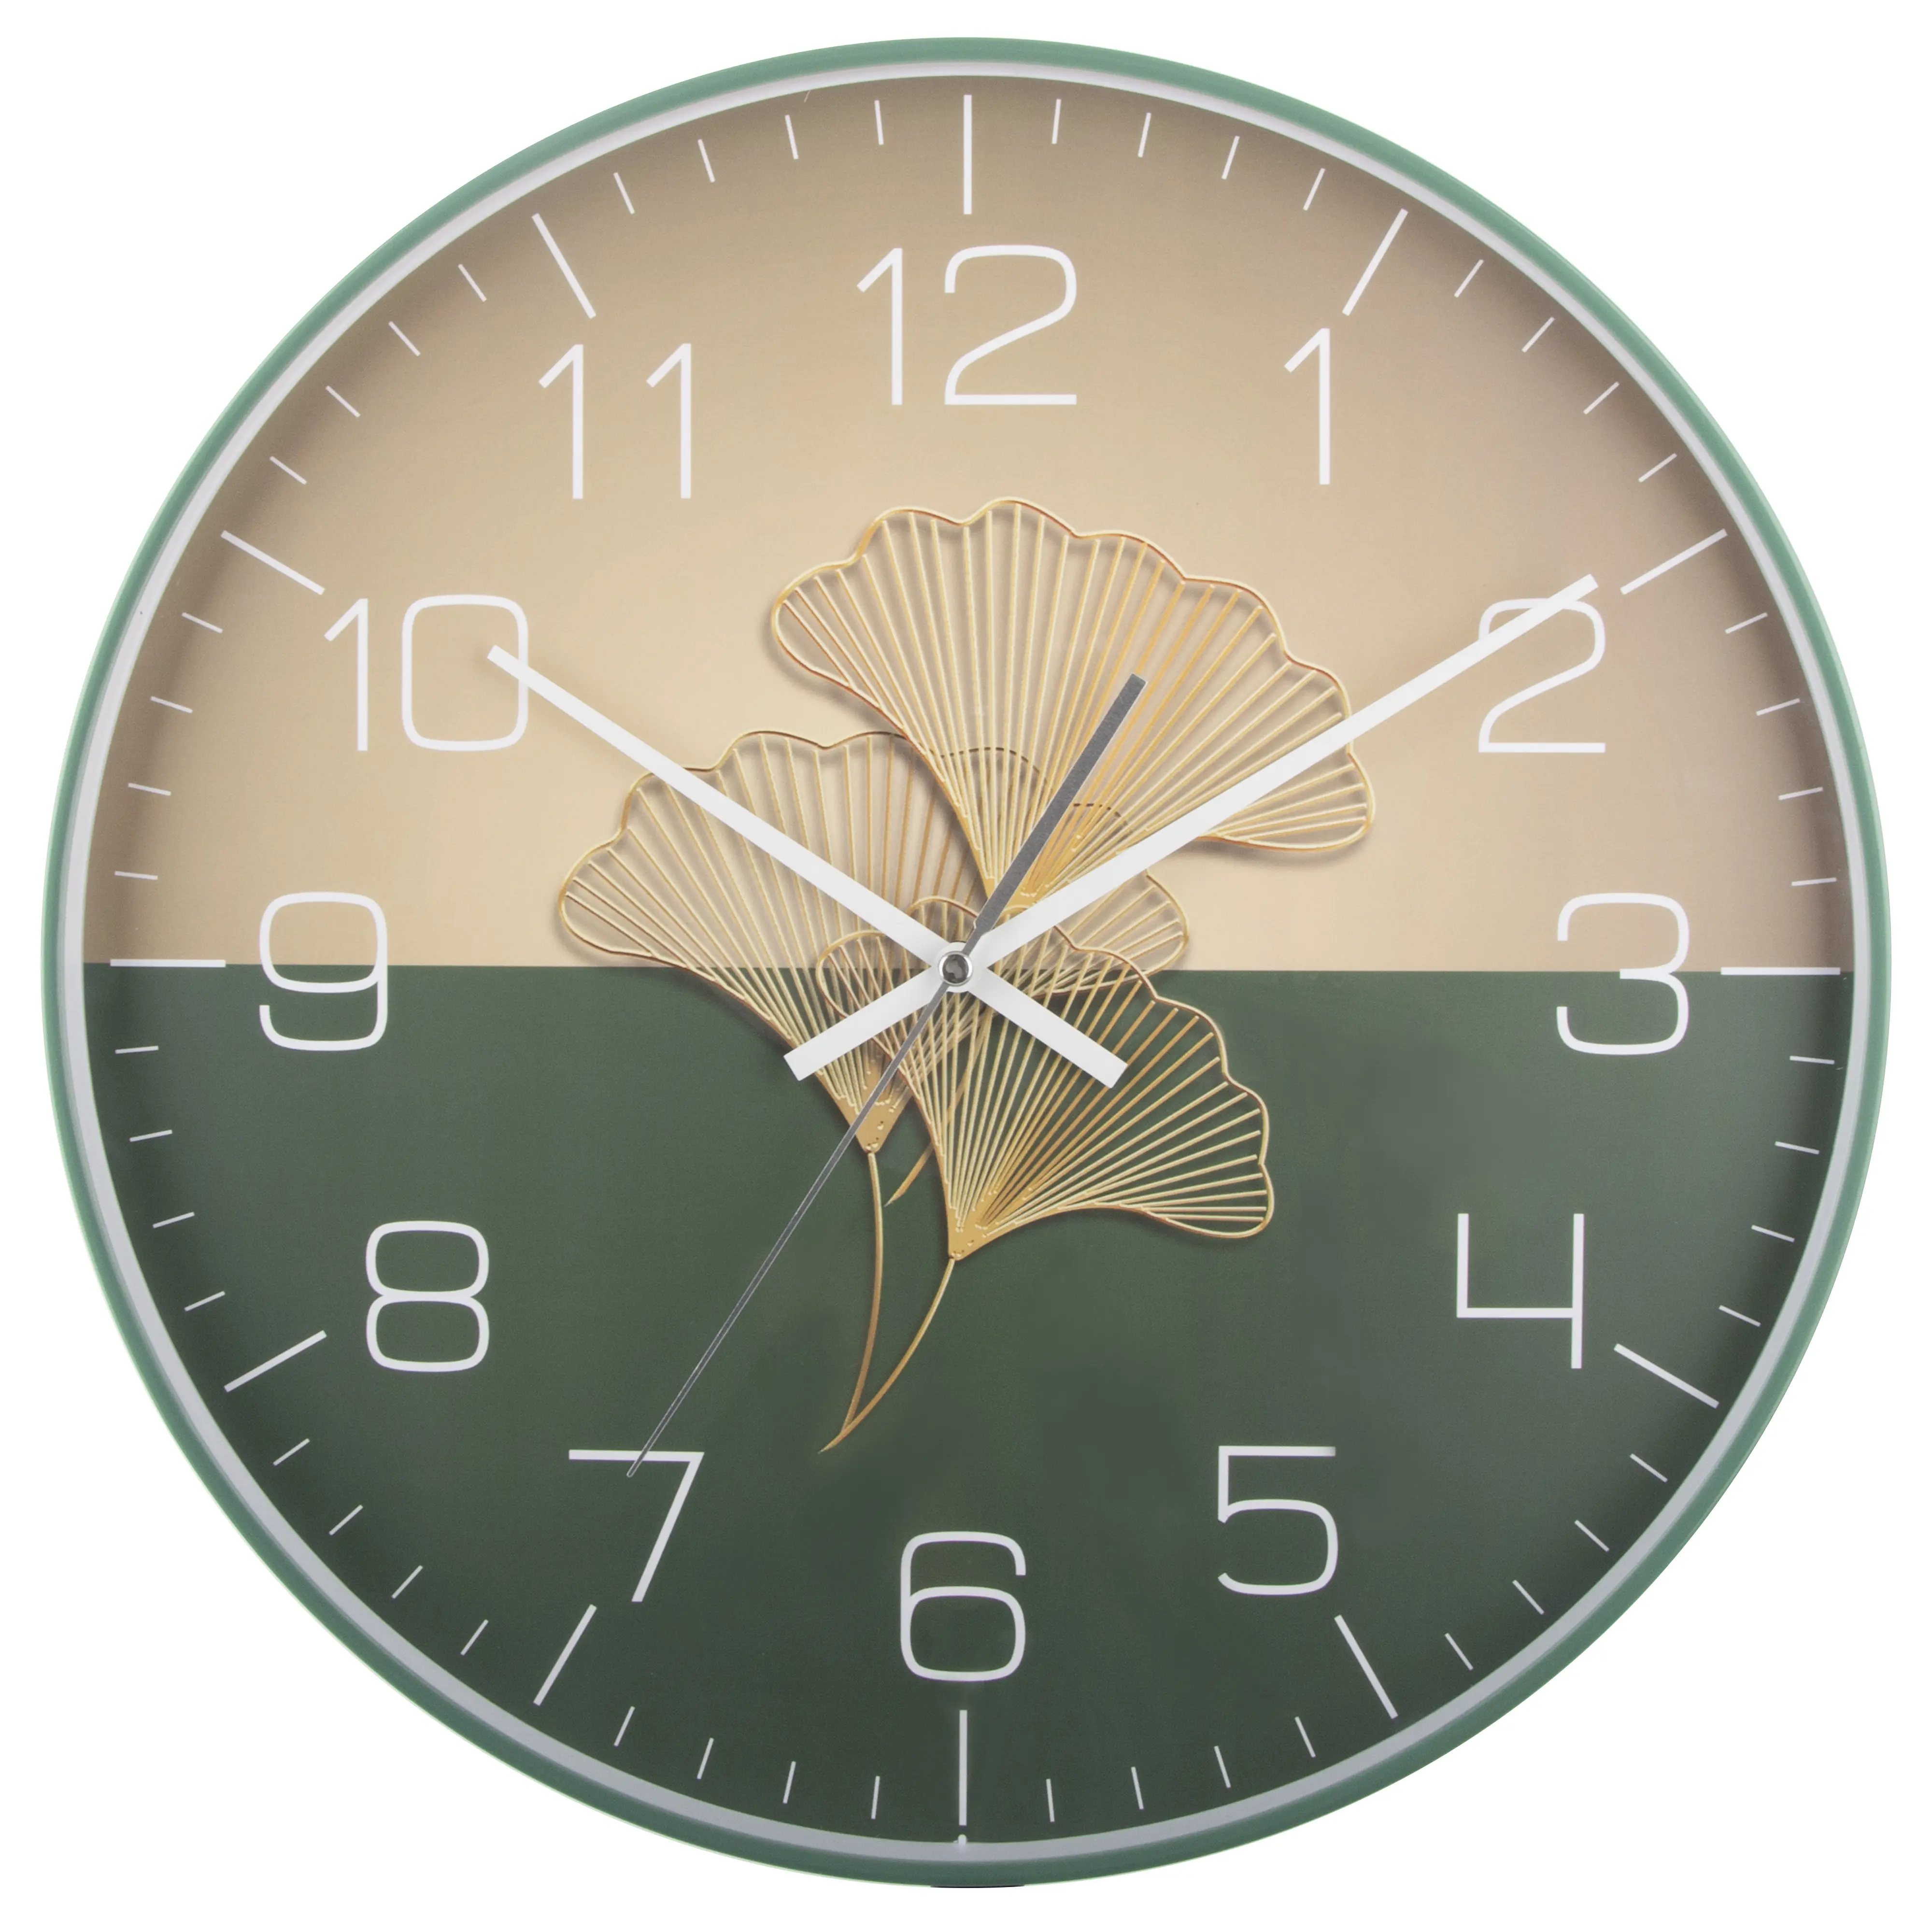 Reloj de pared analógico de cuarzo para decoración del hogar, cronógrafo de cuarzo redondo personalizado, color verde cielo